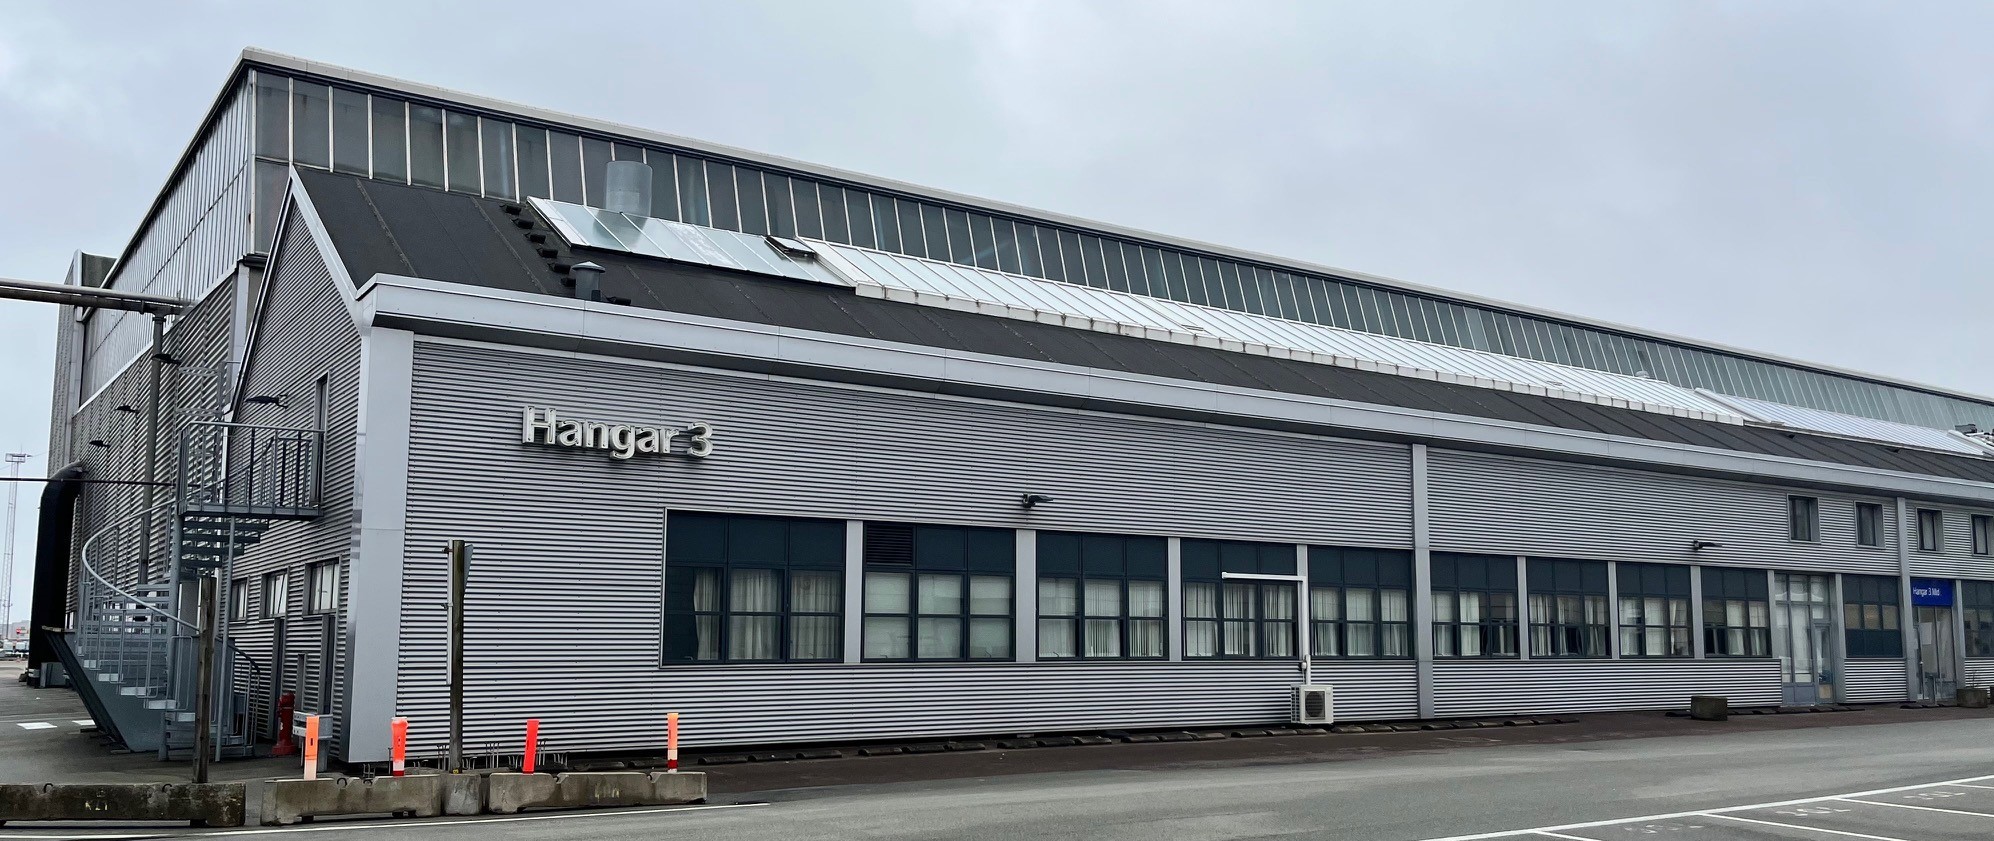 CityJets placering i Hangar 3, Københavns Lufthavn